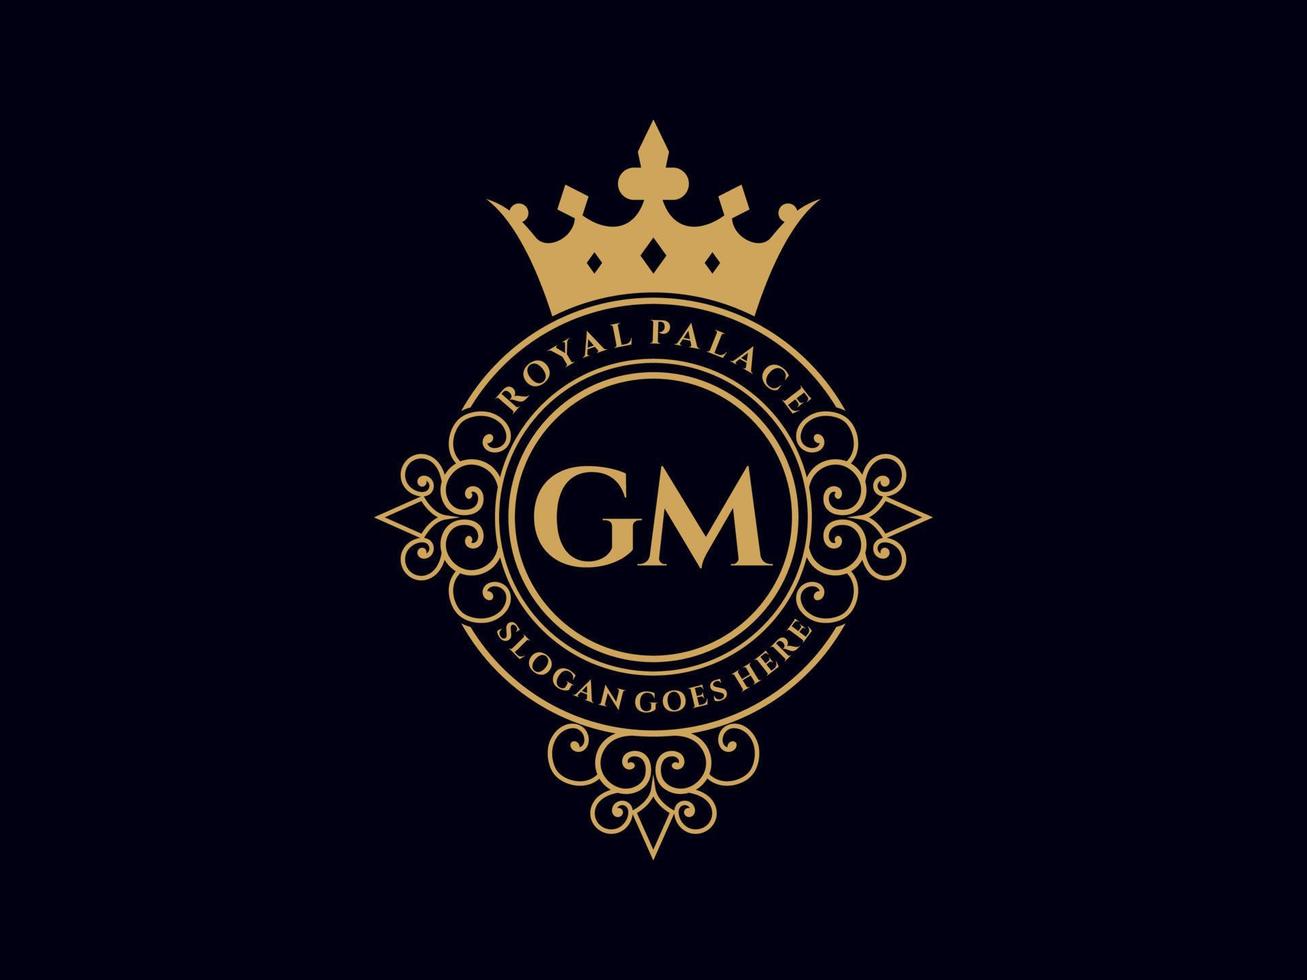 letra gm logotipo victoriano de lujo real antiguo con marco ornamental. vector